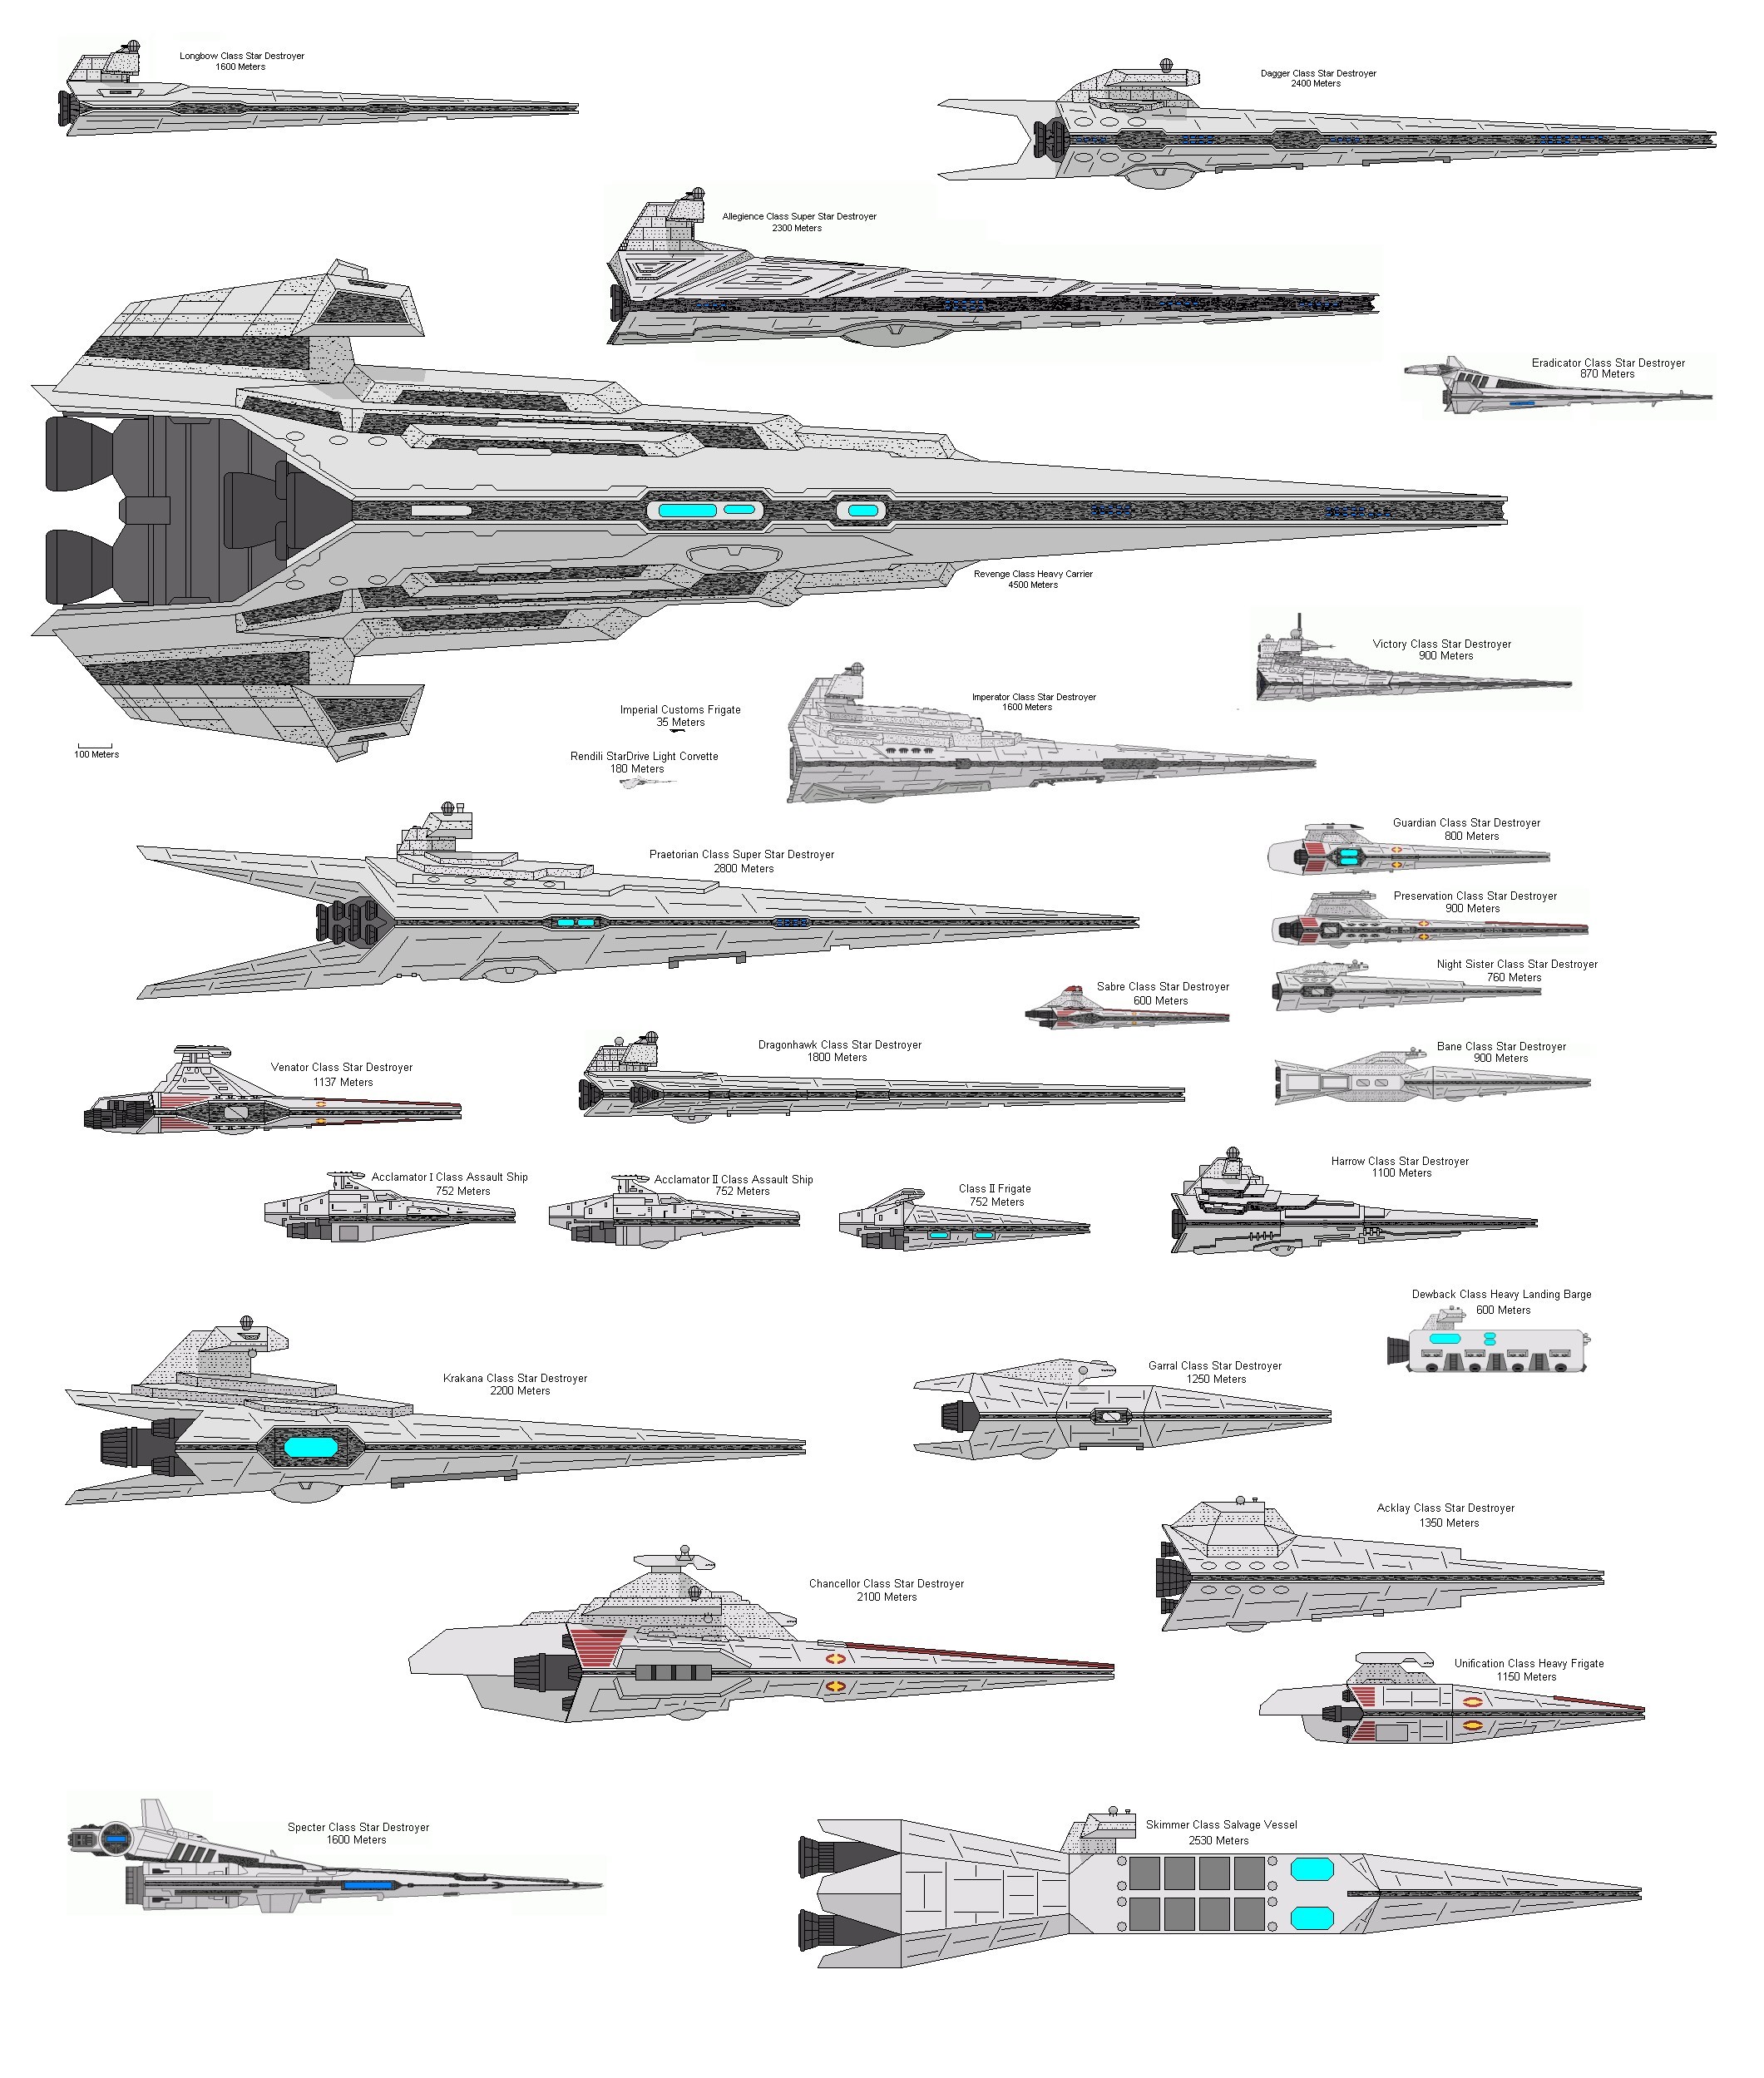 Star Wars Wallpaper on Star Wars Destroyer Spaceships Empire Hd Wallpaper   Movies   Tv